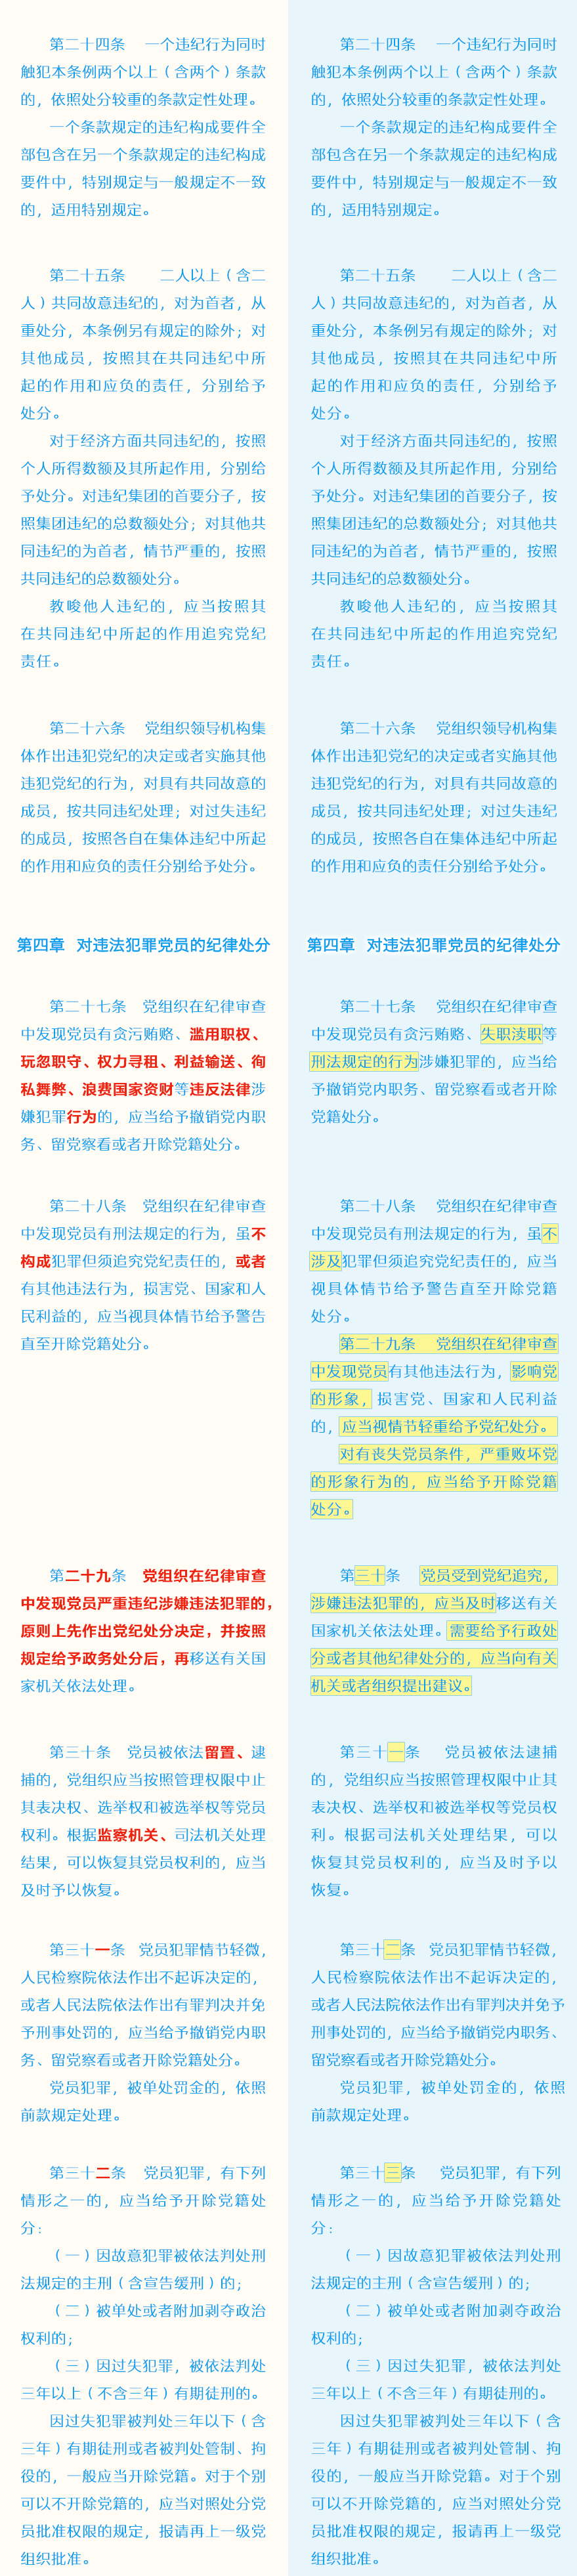 《中国共产党纪律处分条例》修订前后对照表